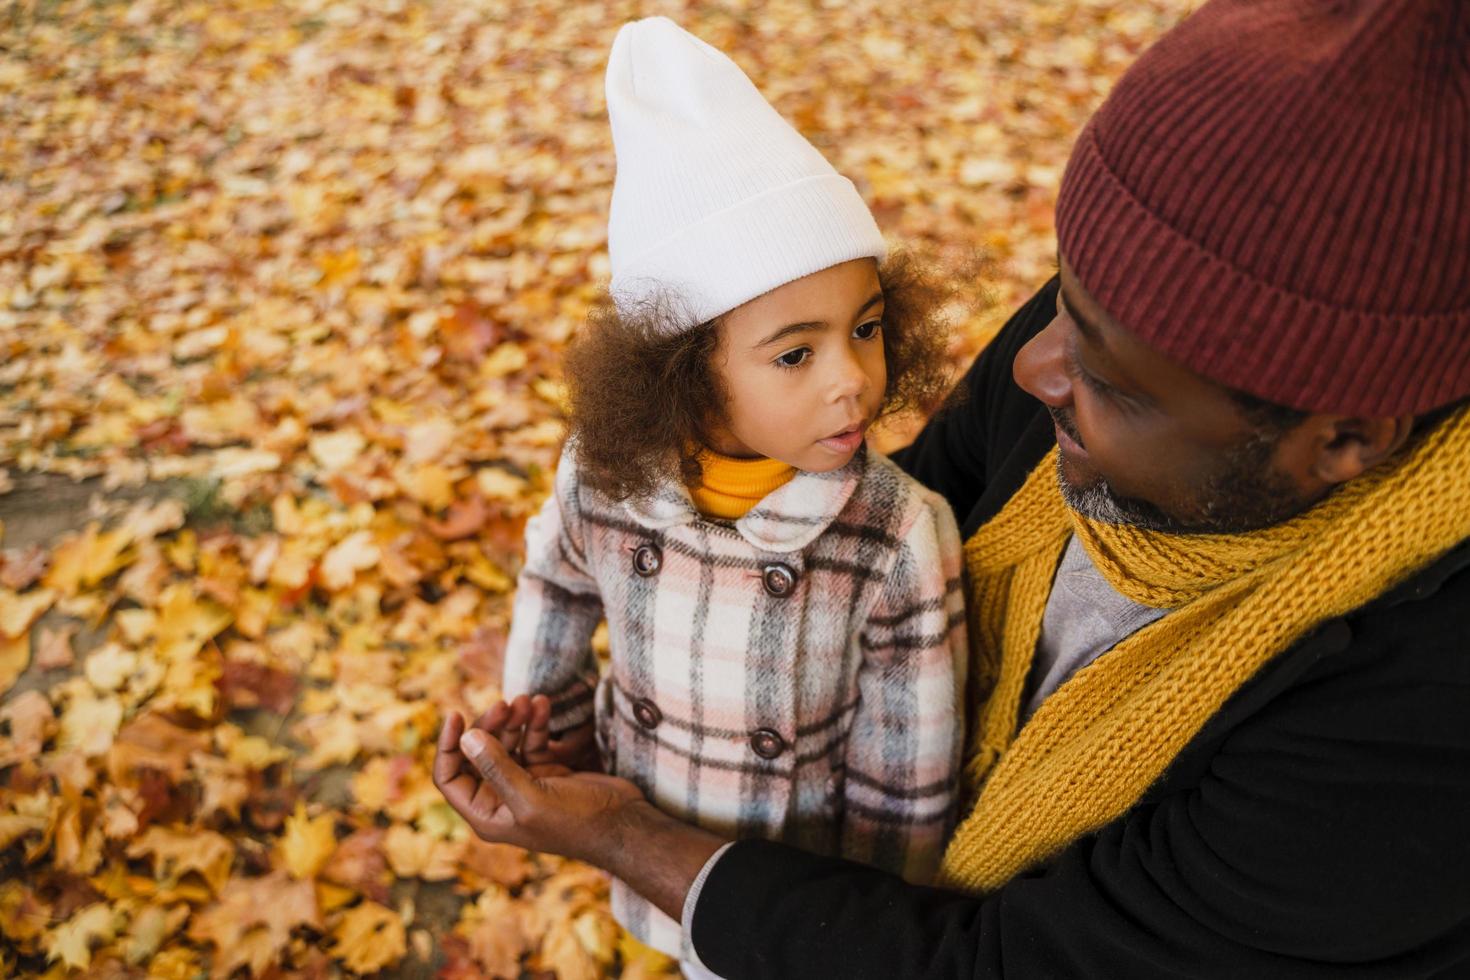 grand-père et petite-fille noirs s'amusant en jouant ensemble dans un parc d'automne photo